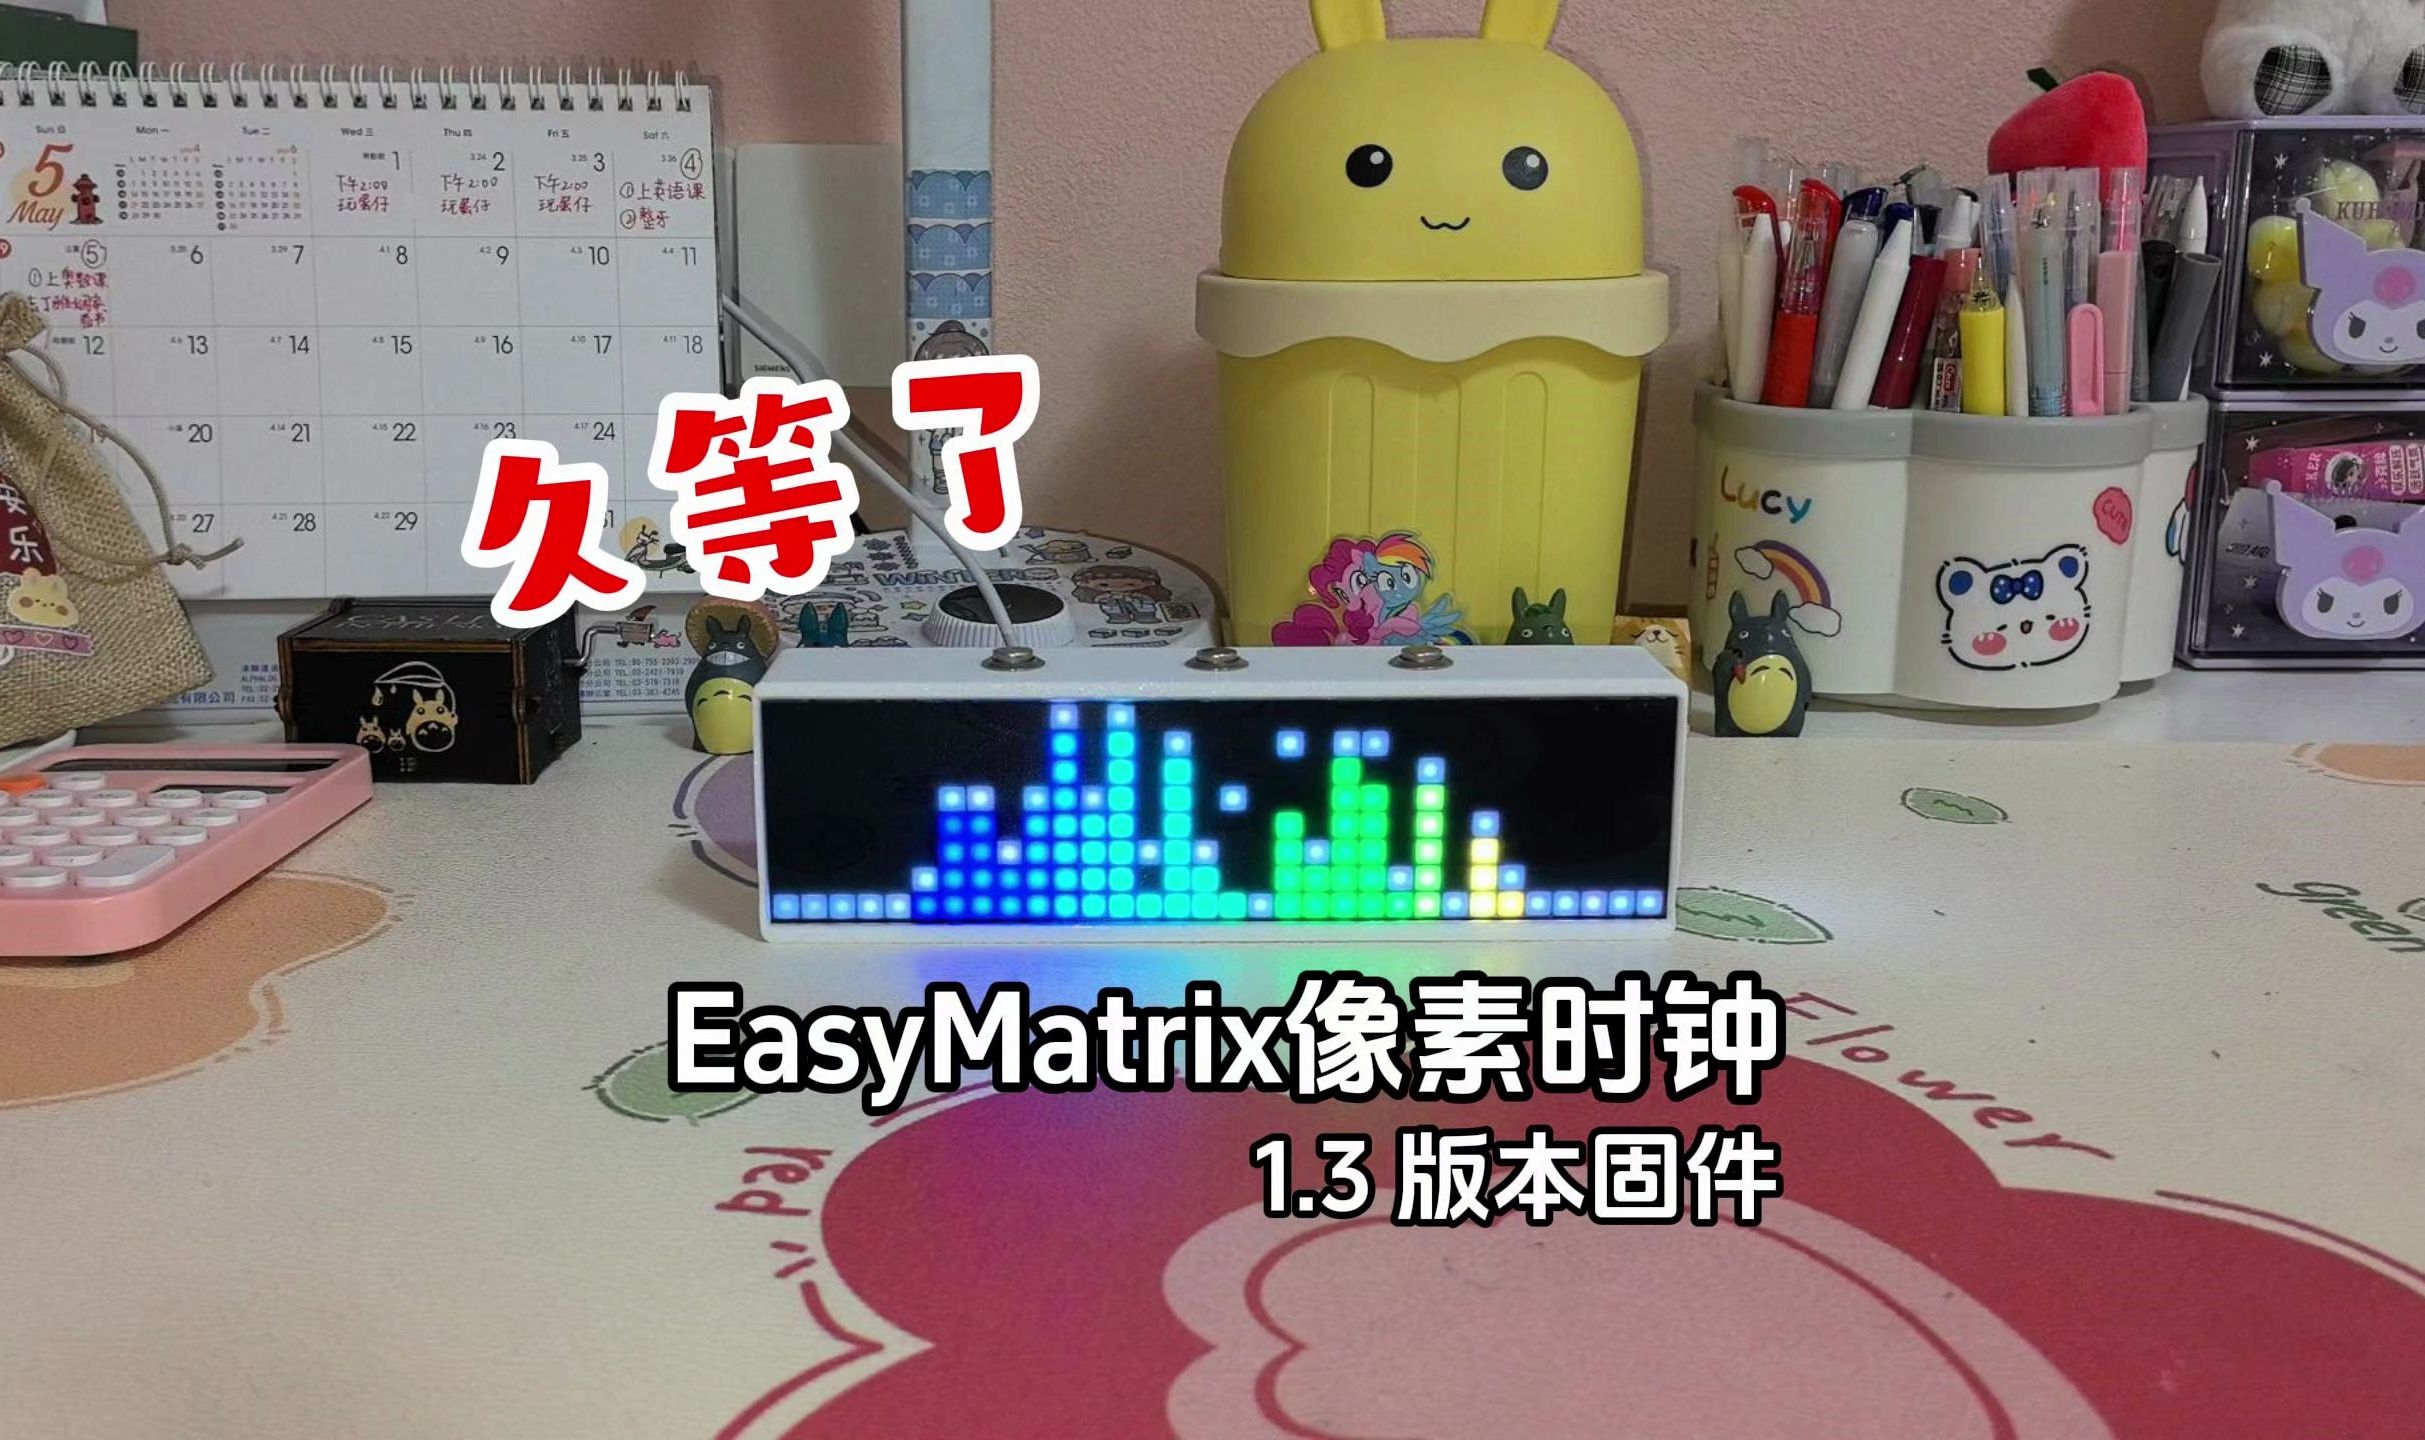 EasyMatrix像素时钟固件升级，自动调节亮度&节奏灯频率模式增加